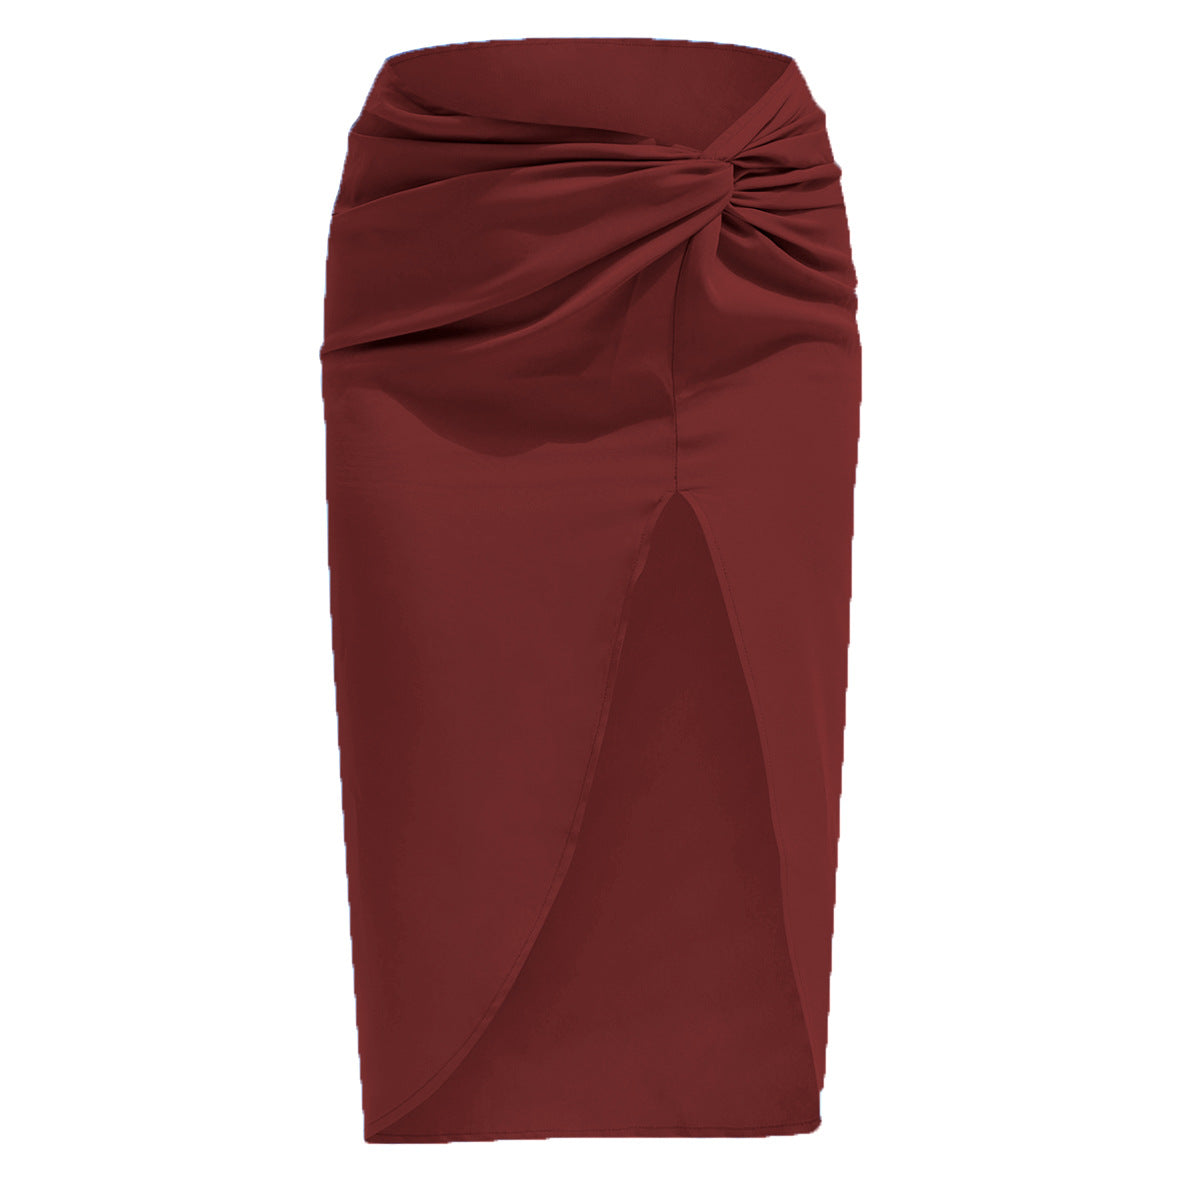 High Waist French Twist Irregular Asymmetric Skirt